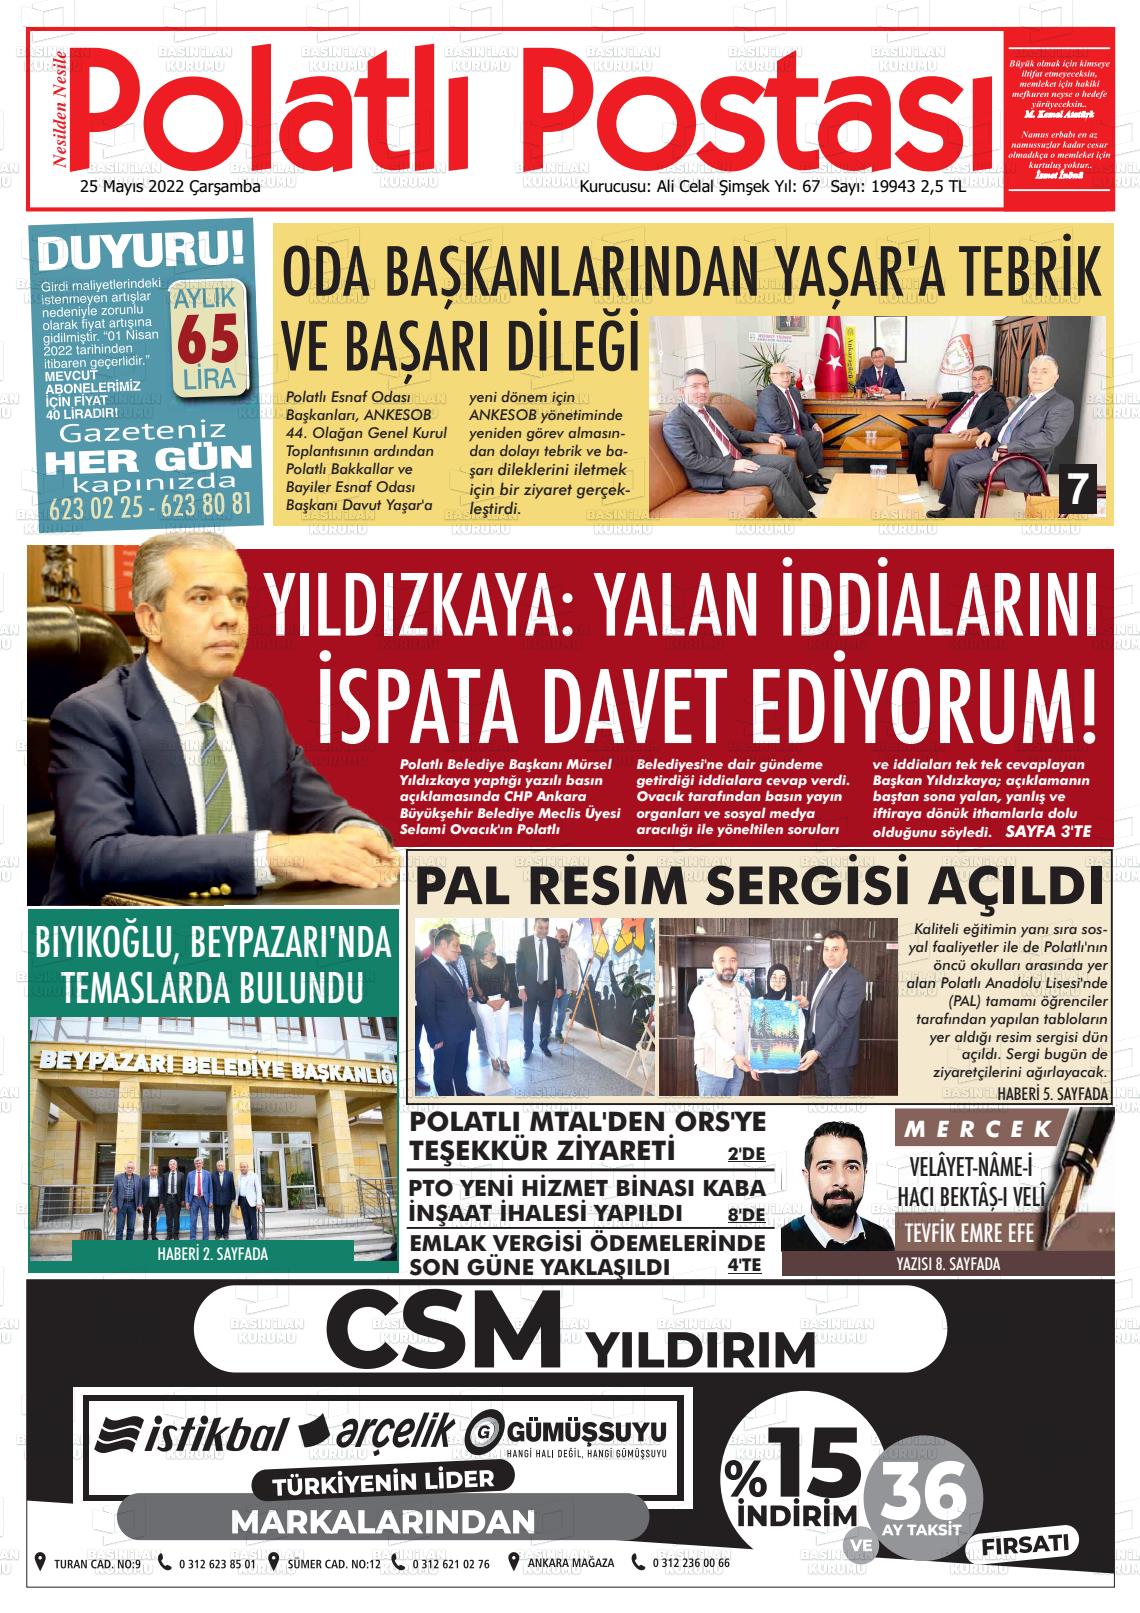 25 Mayıs 2022 Polatlı Postası Gazete Manşeti